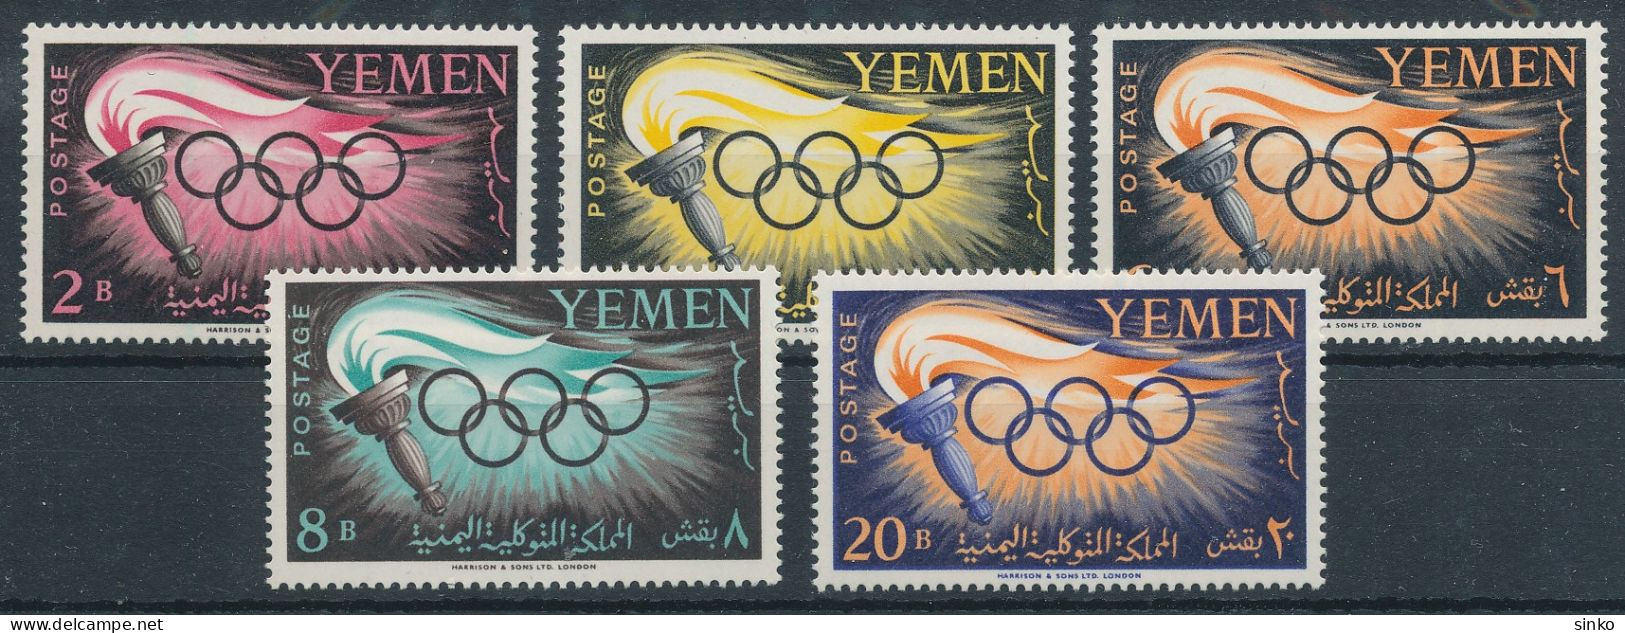 1960. Yemen - Olympics - Verano 1960: Roma